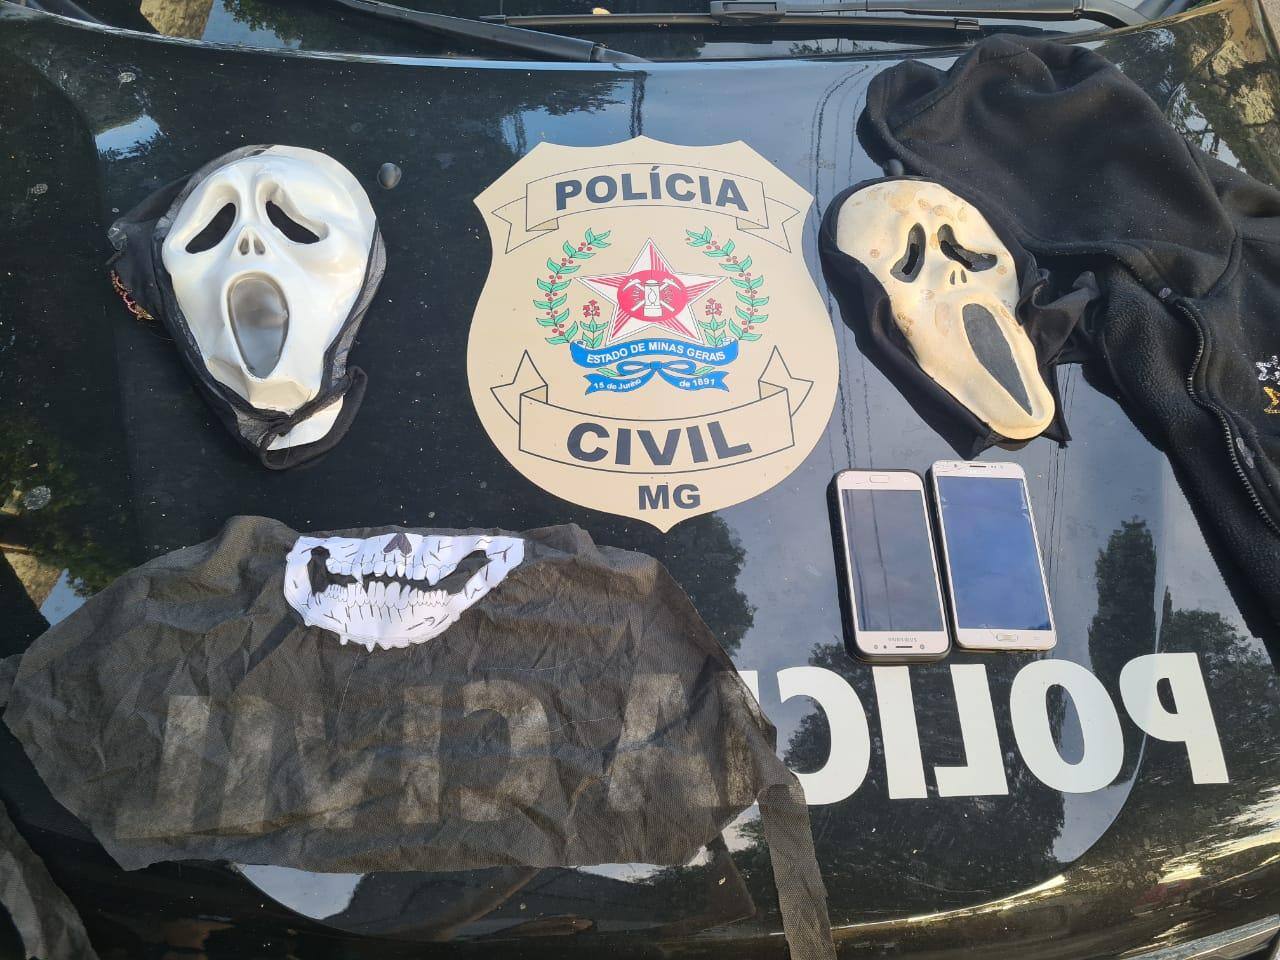 Máscaras, blusas, capuz e celulares foram apreendidos com a suspeita.